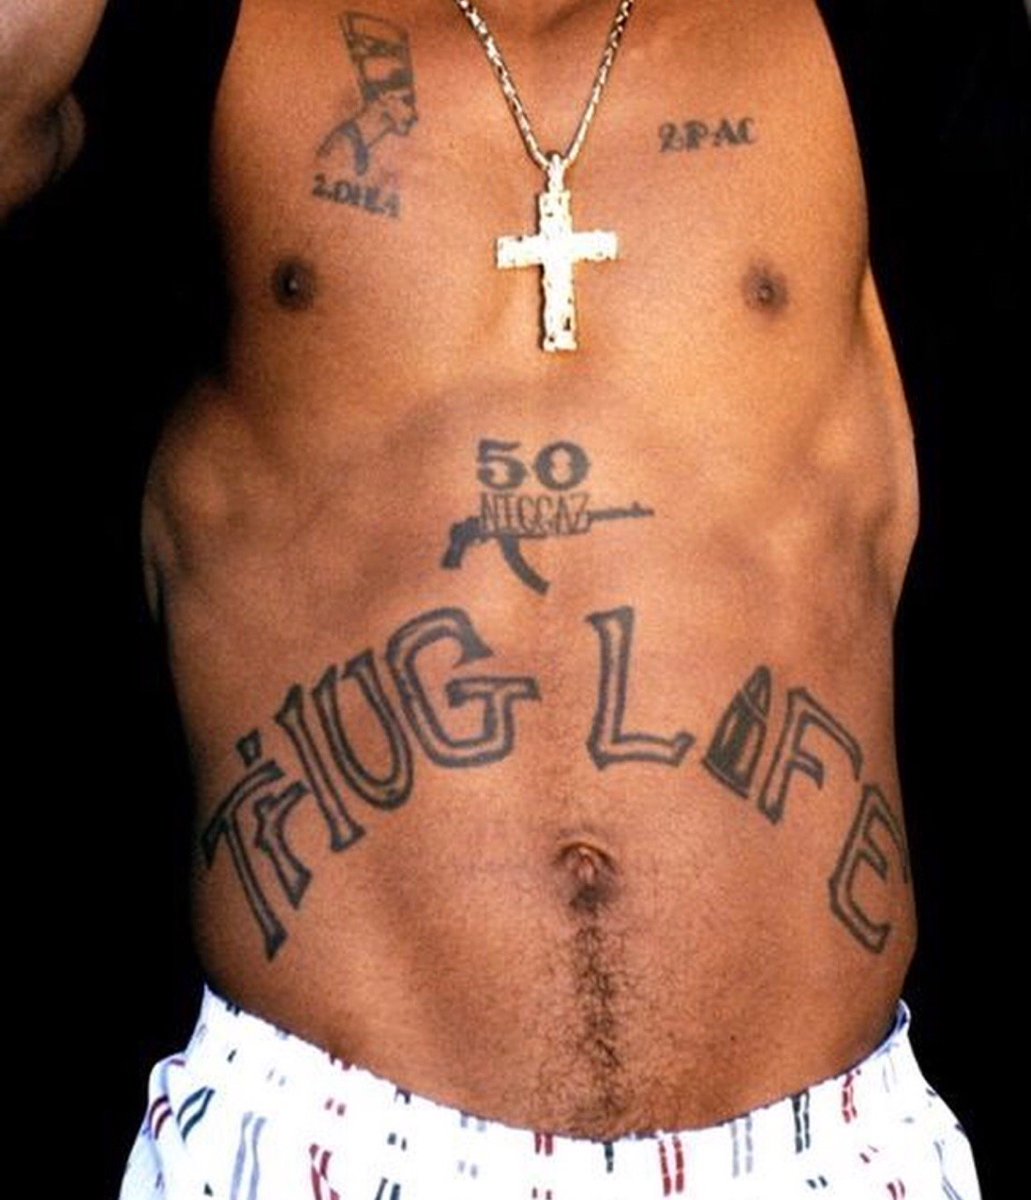 2pac thug life tattoo